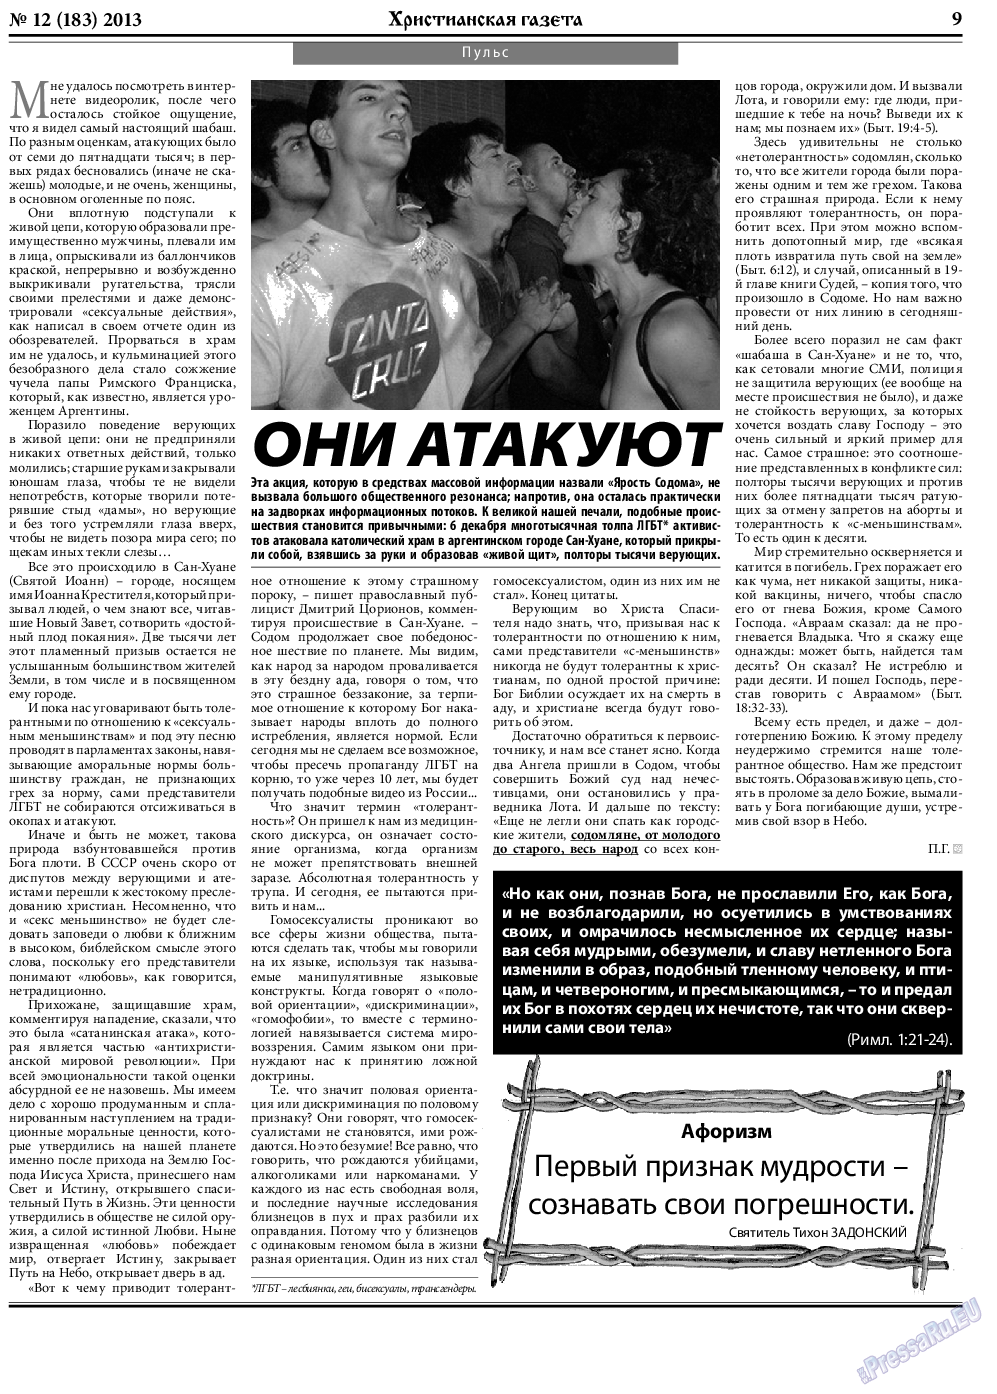 Христианская газета, газета. 2013 №12 стр.9